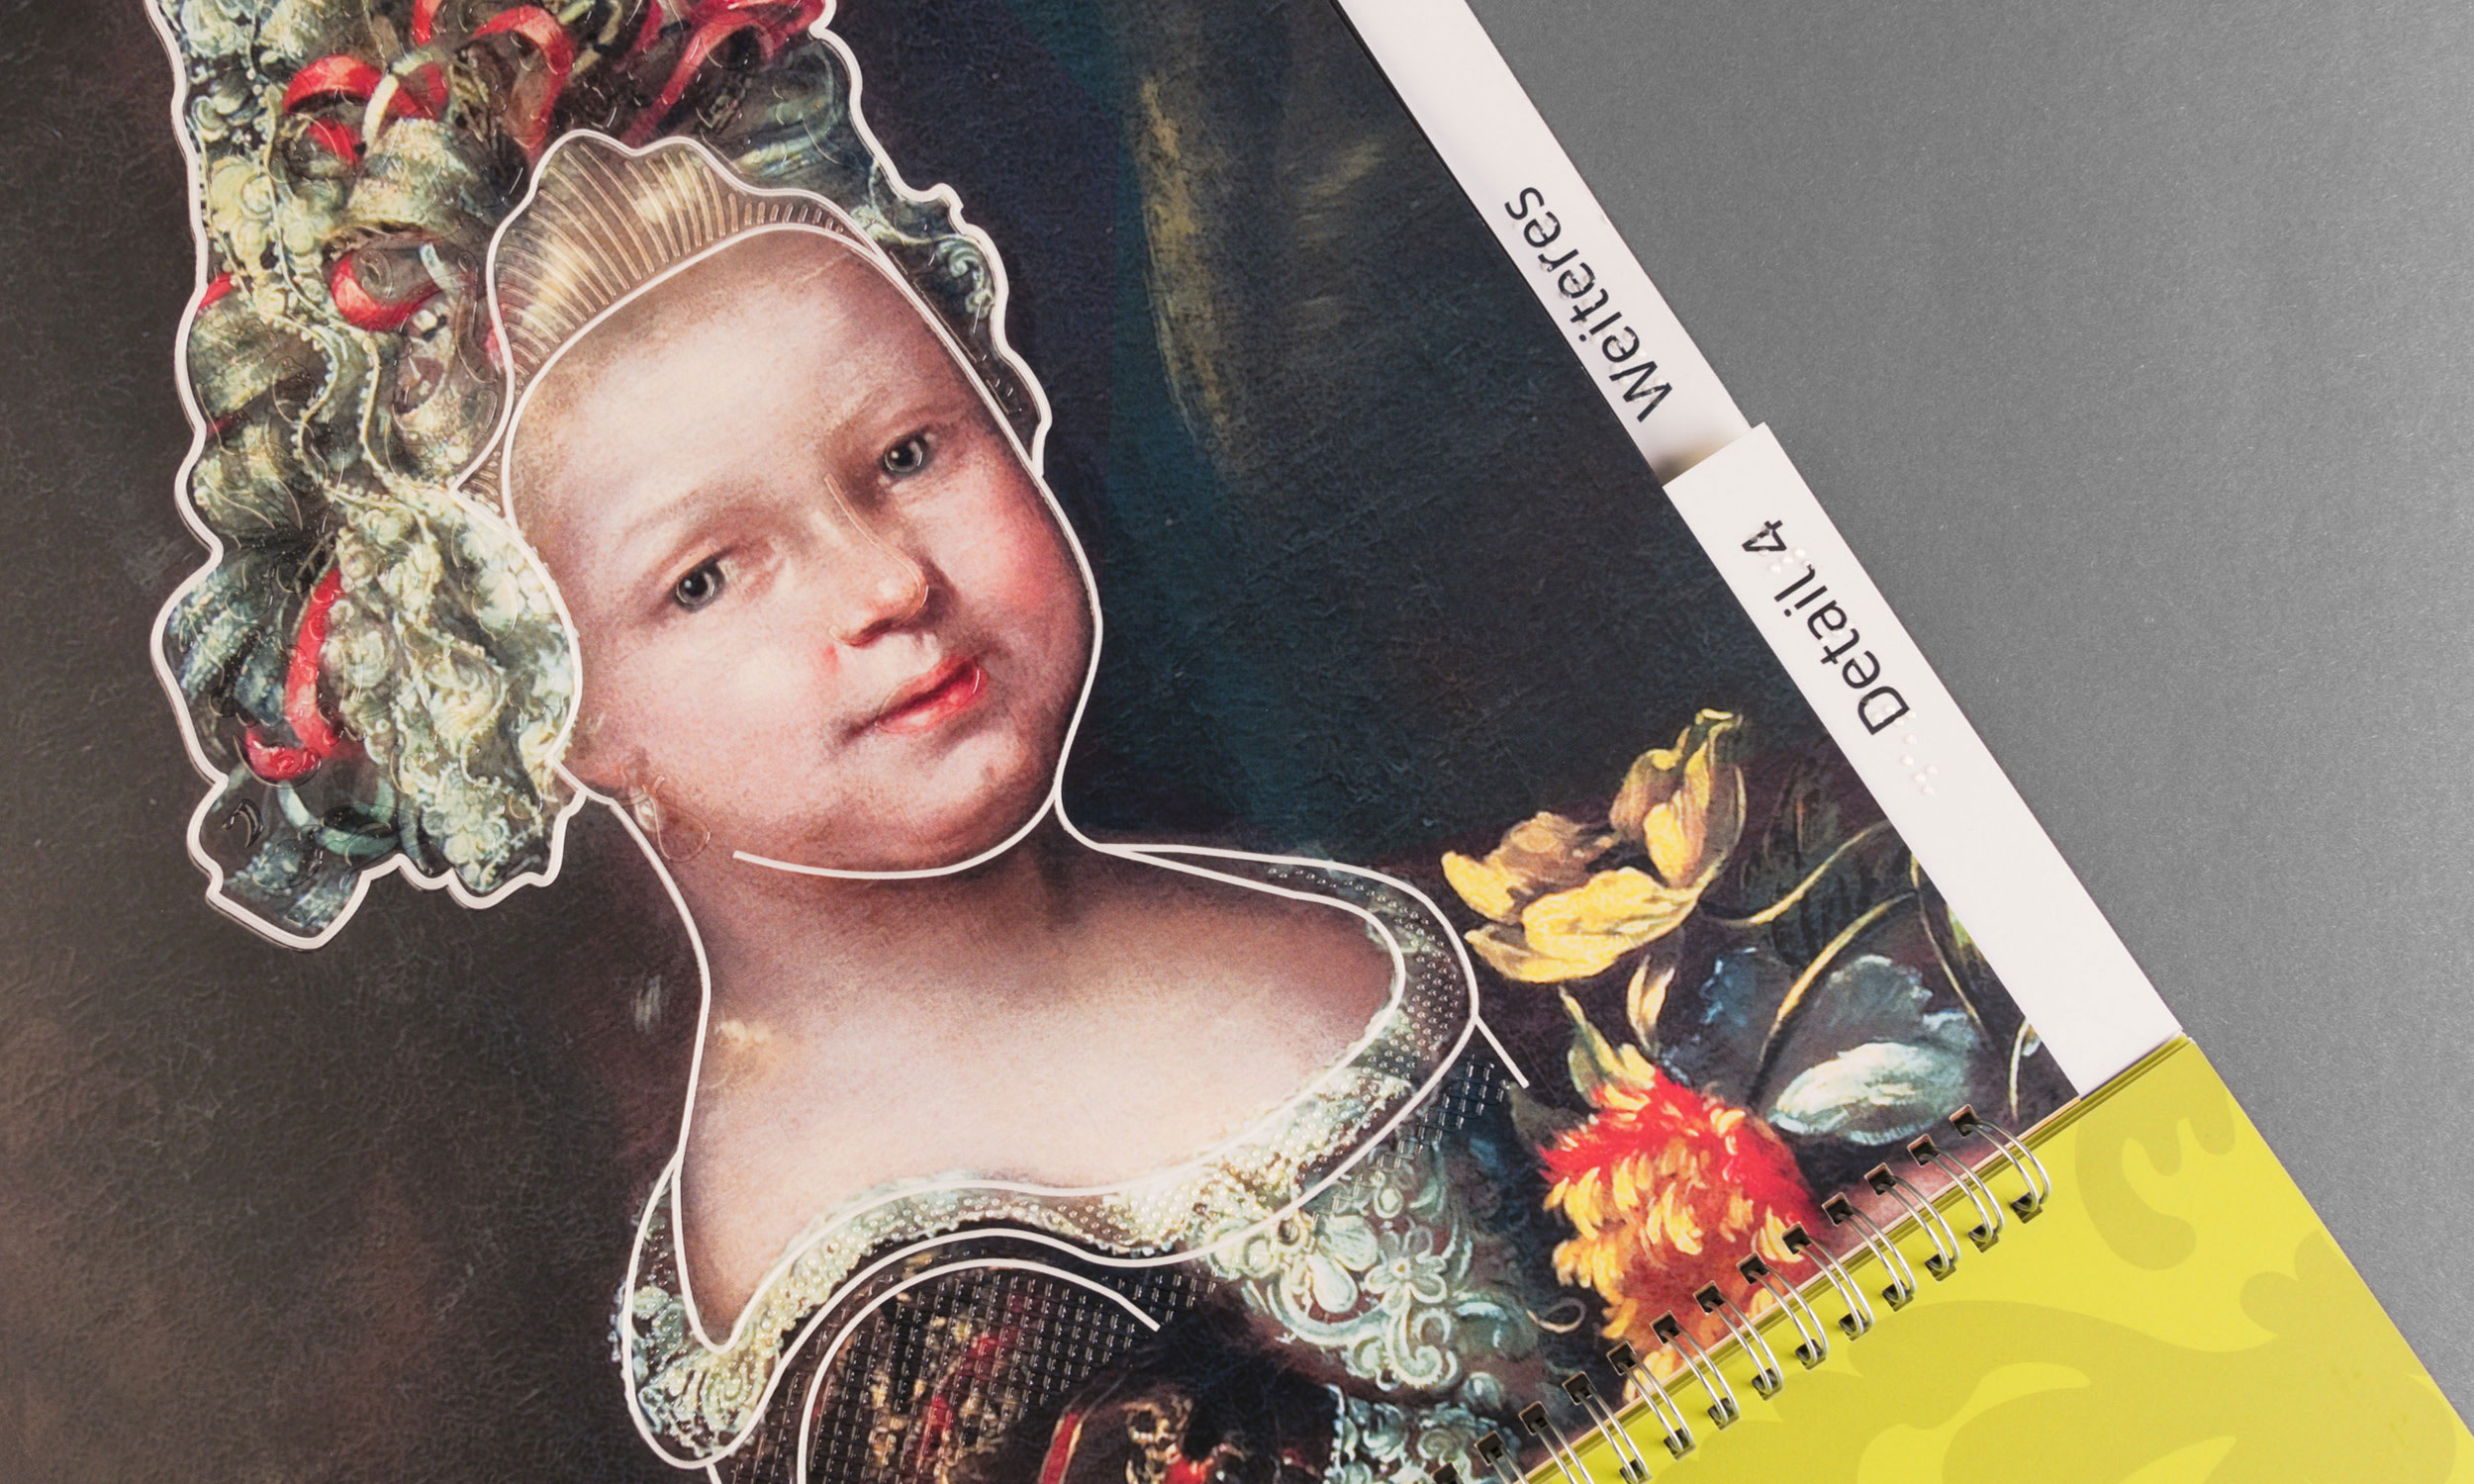 Detailfoto mit Nahansicht der „Kleinen Prinzessin“ auf dem Titel des taktilen Begleitheftes